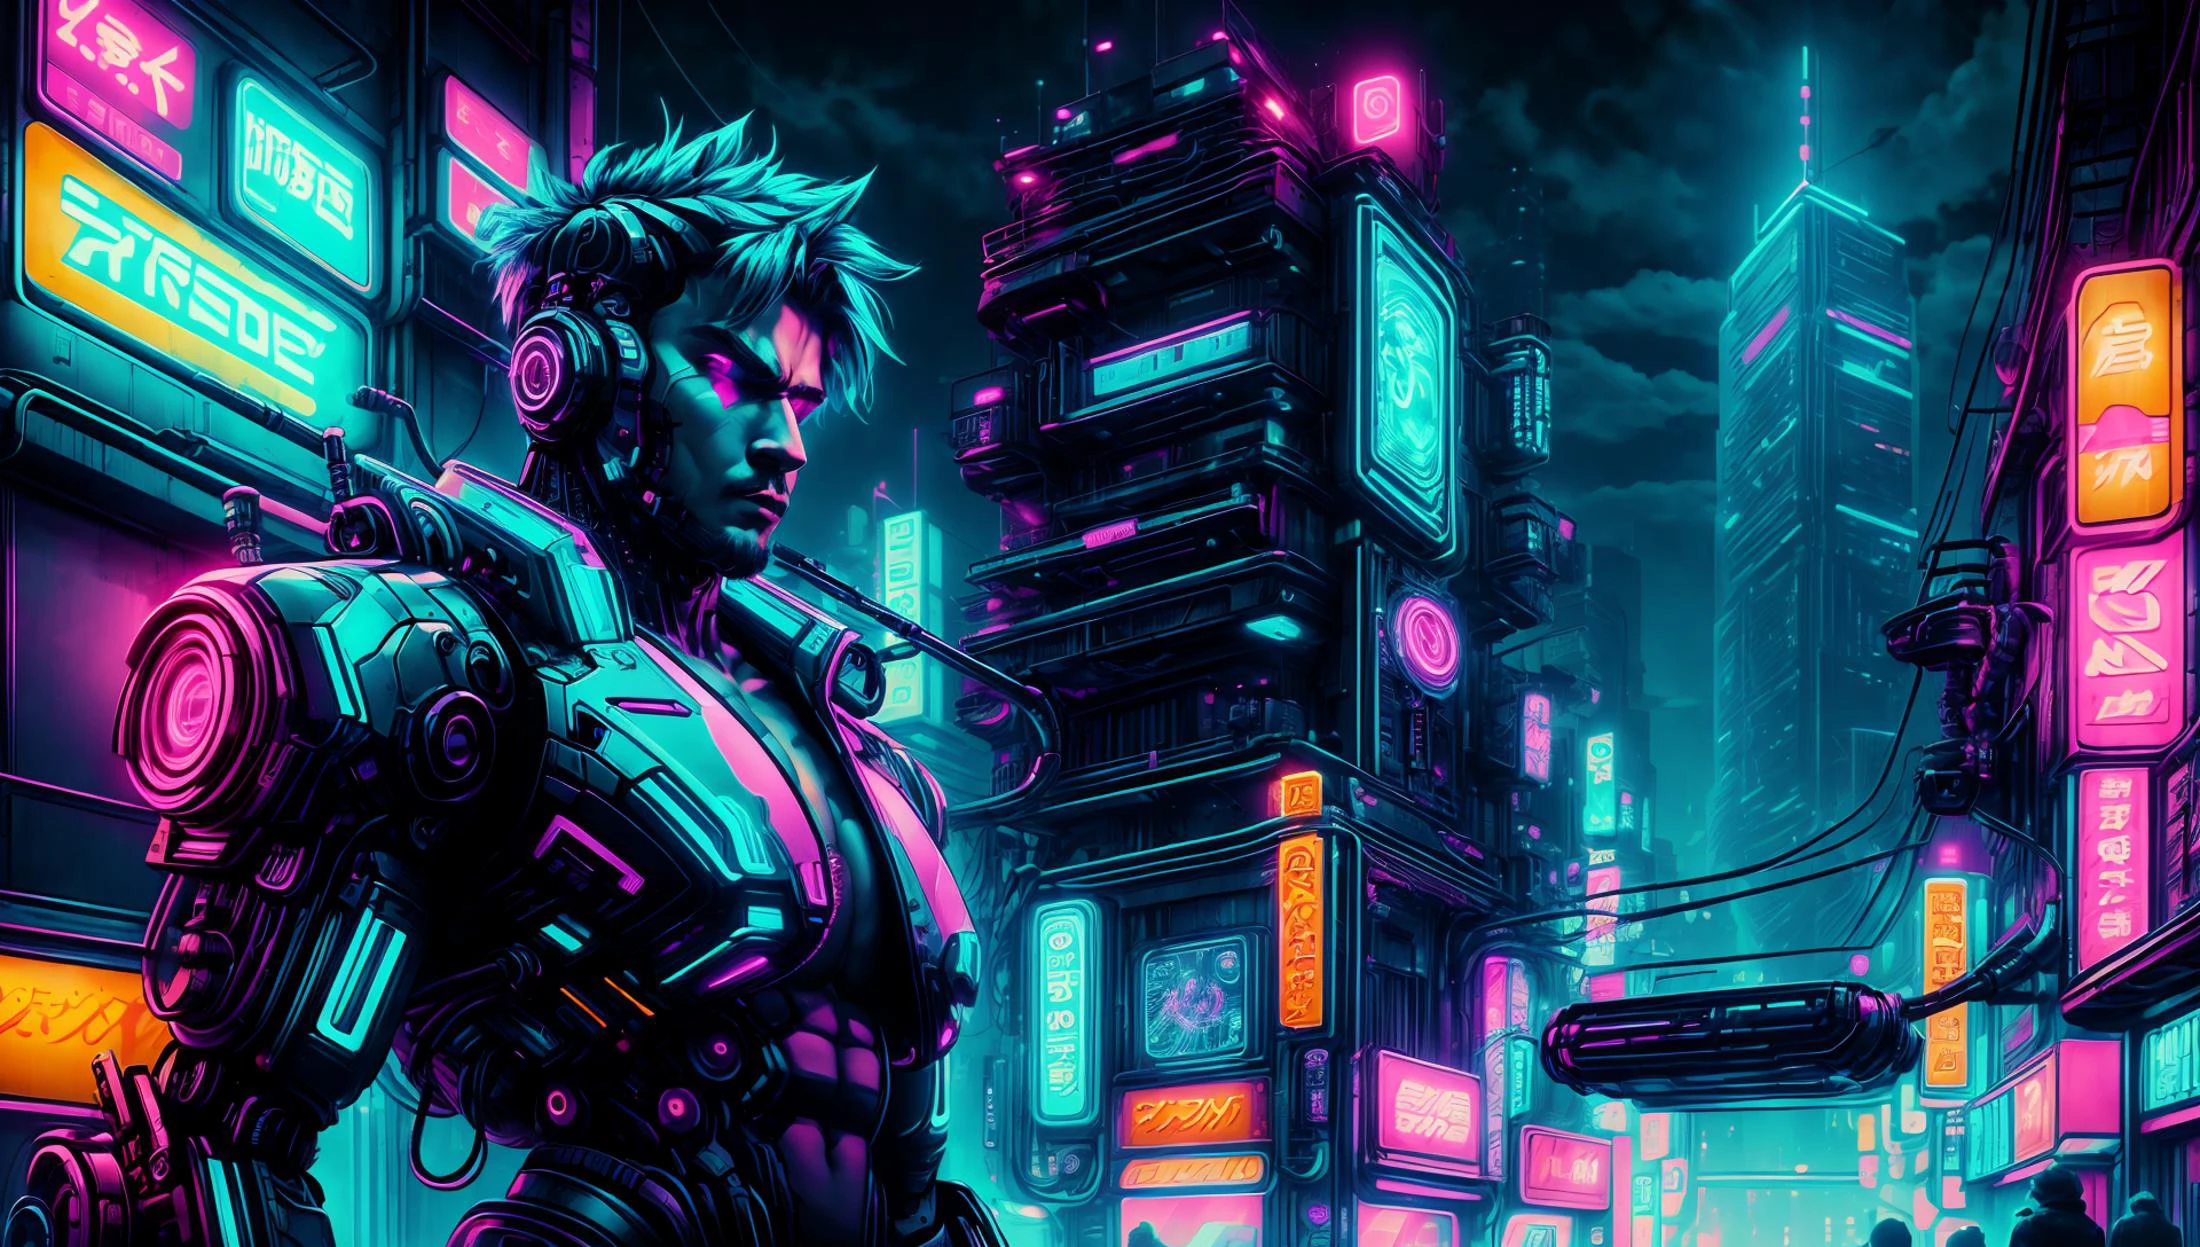 رجل مع الثدي في المدينة, أضواء النيون, السايبربانك,  ليلة, cyberpunk, 1 رجل, , الذراع الروبوتية,  